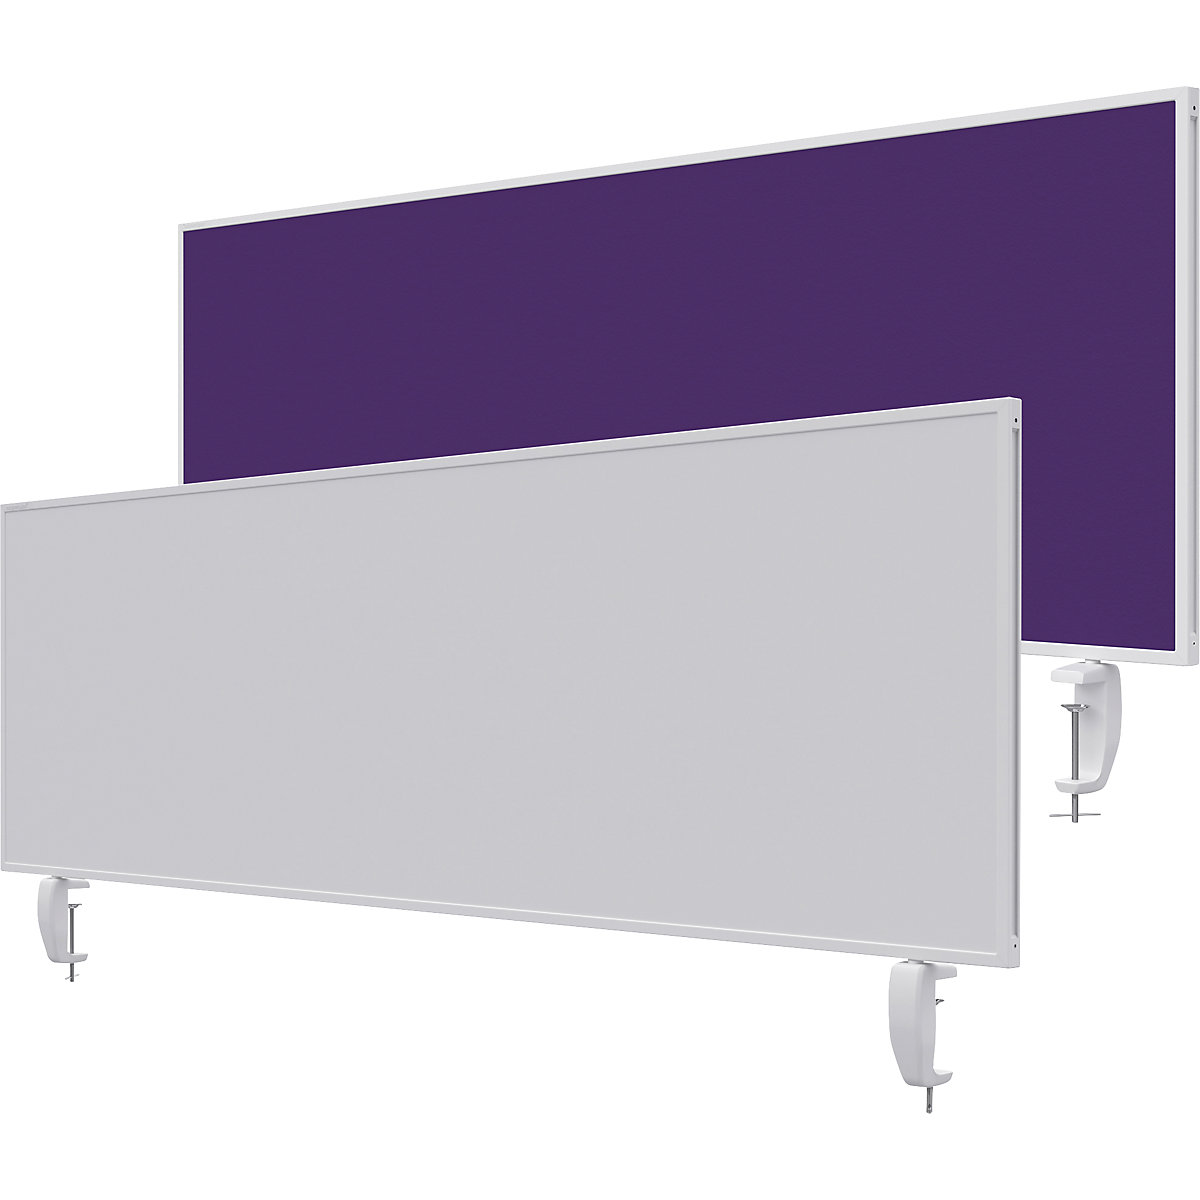 Namizna predelna stena VarioPin – magnetoplan, bela tabla/klobučevina, širina 1600 mm, vijolične barve